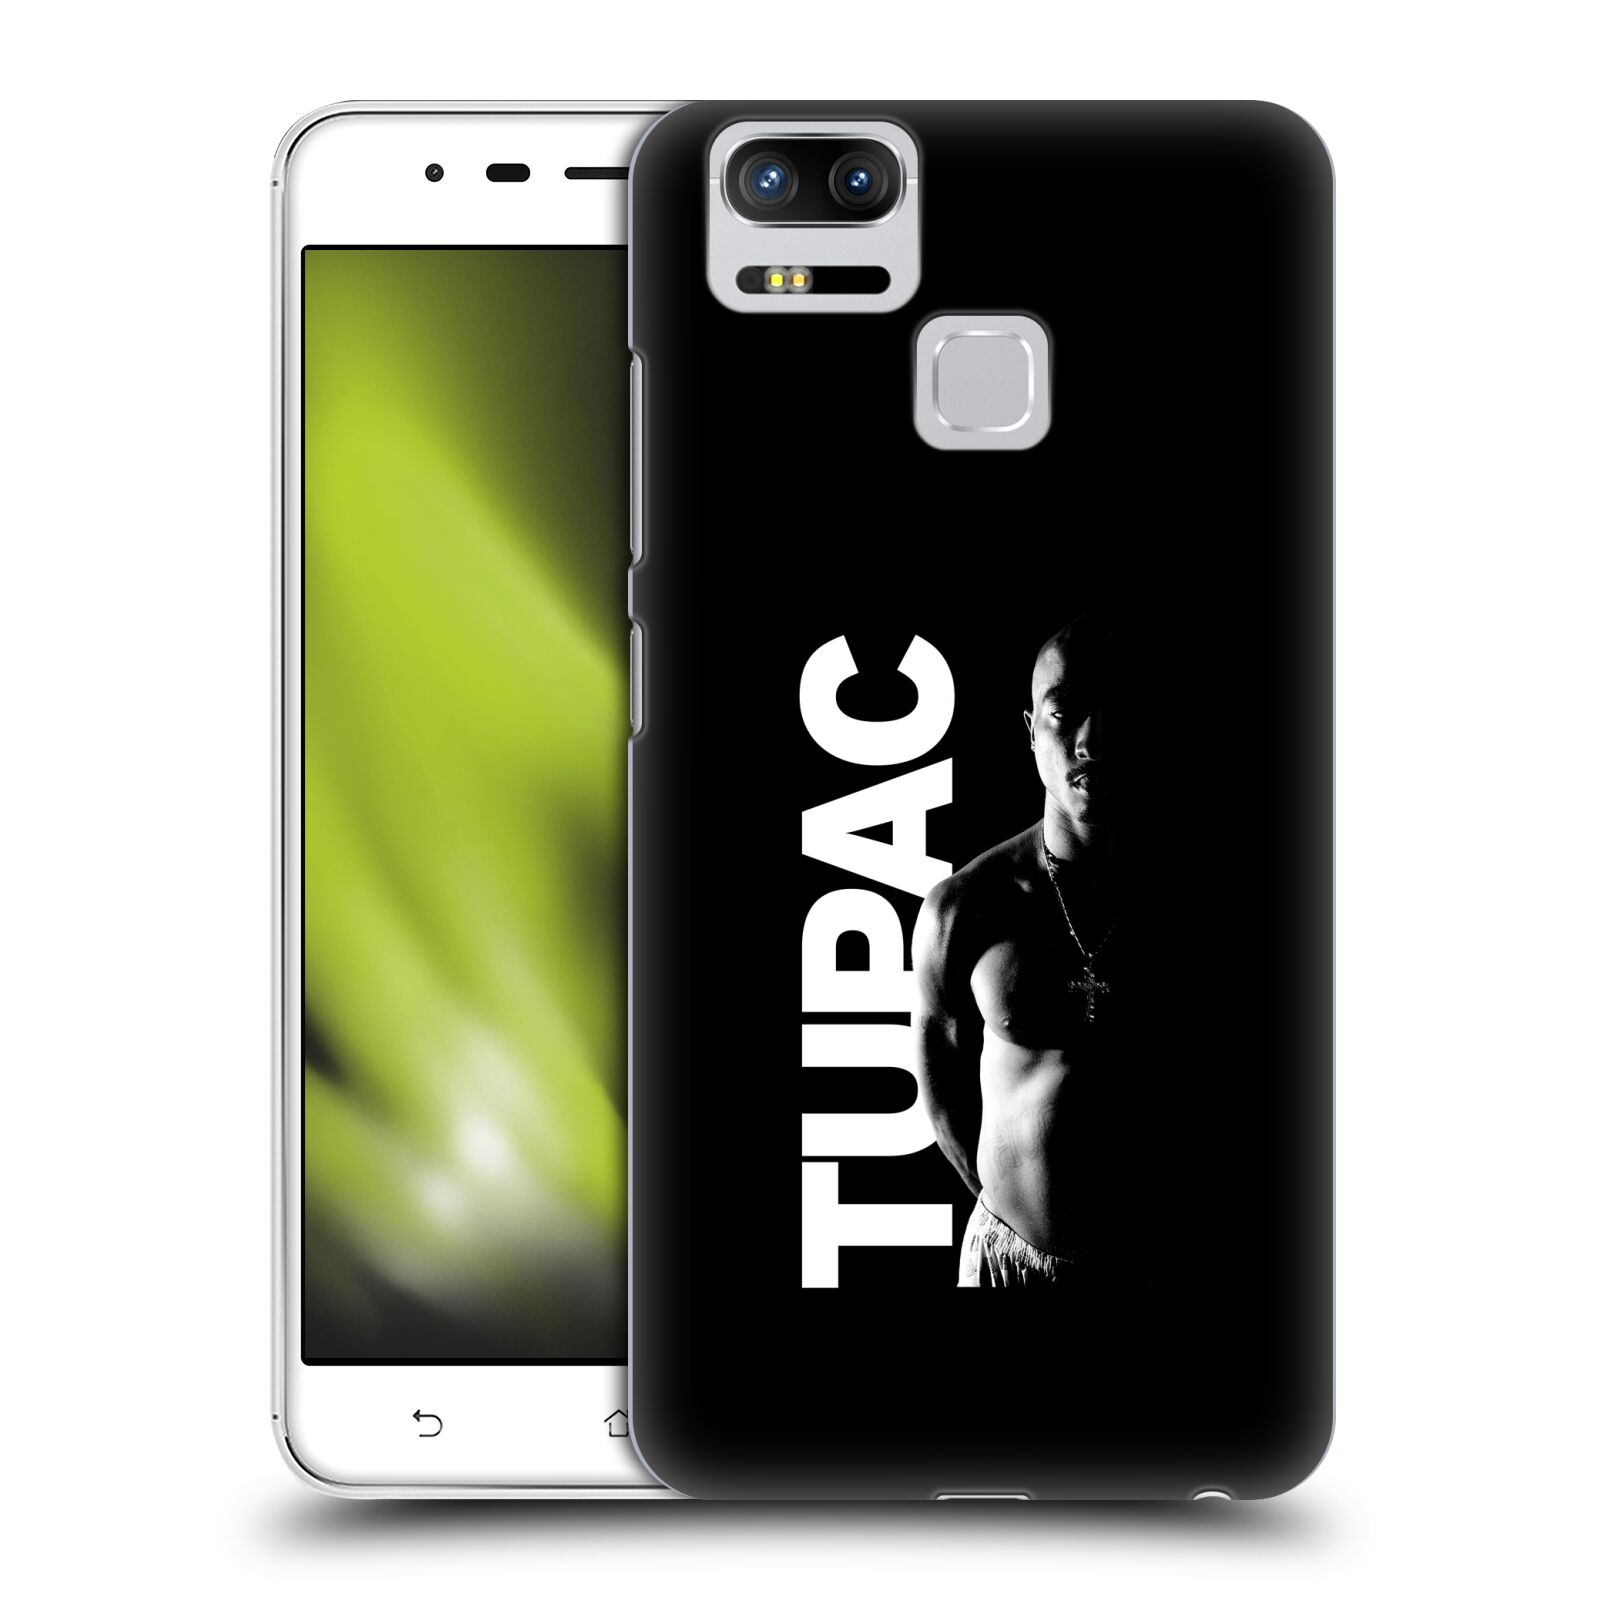 HEAD CASE plastový obal na mobil Asus Zenfone 3 Zoom ZE553KL Zpěvák rapper Tupac Shakur 2Pac bílý nadpis